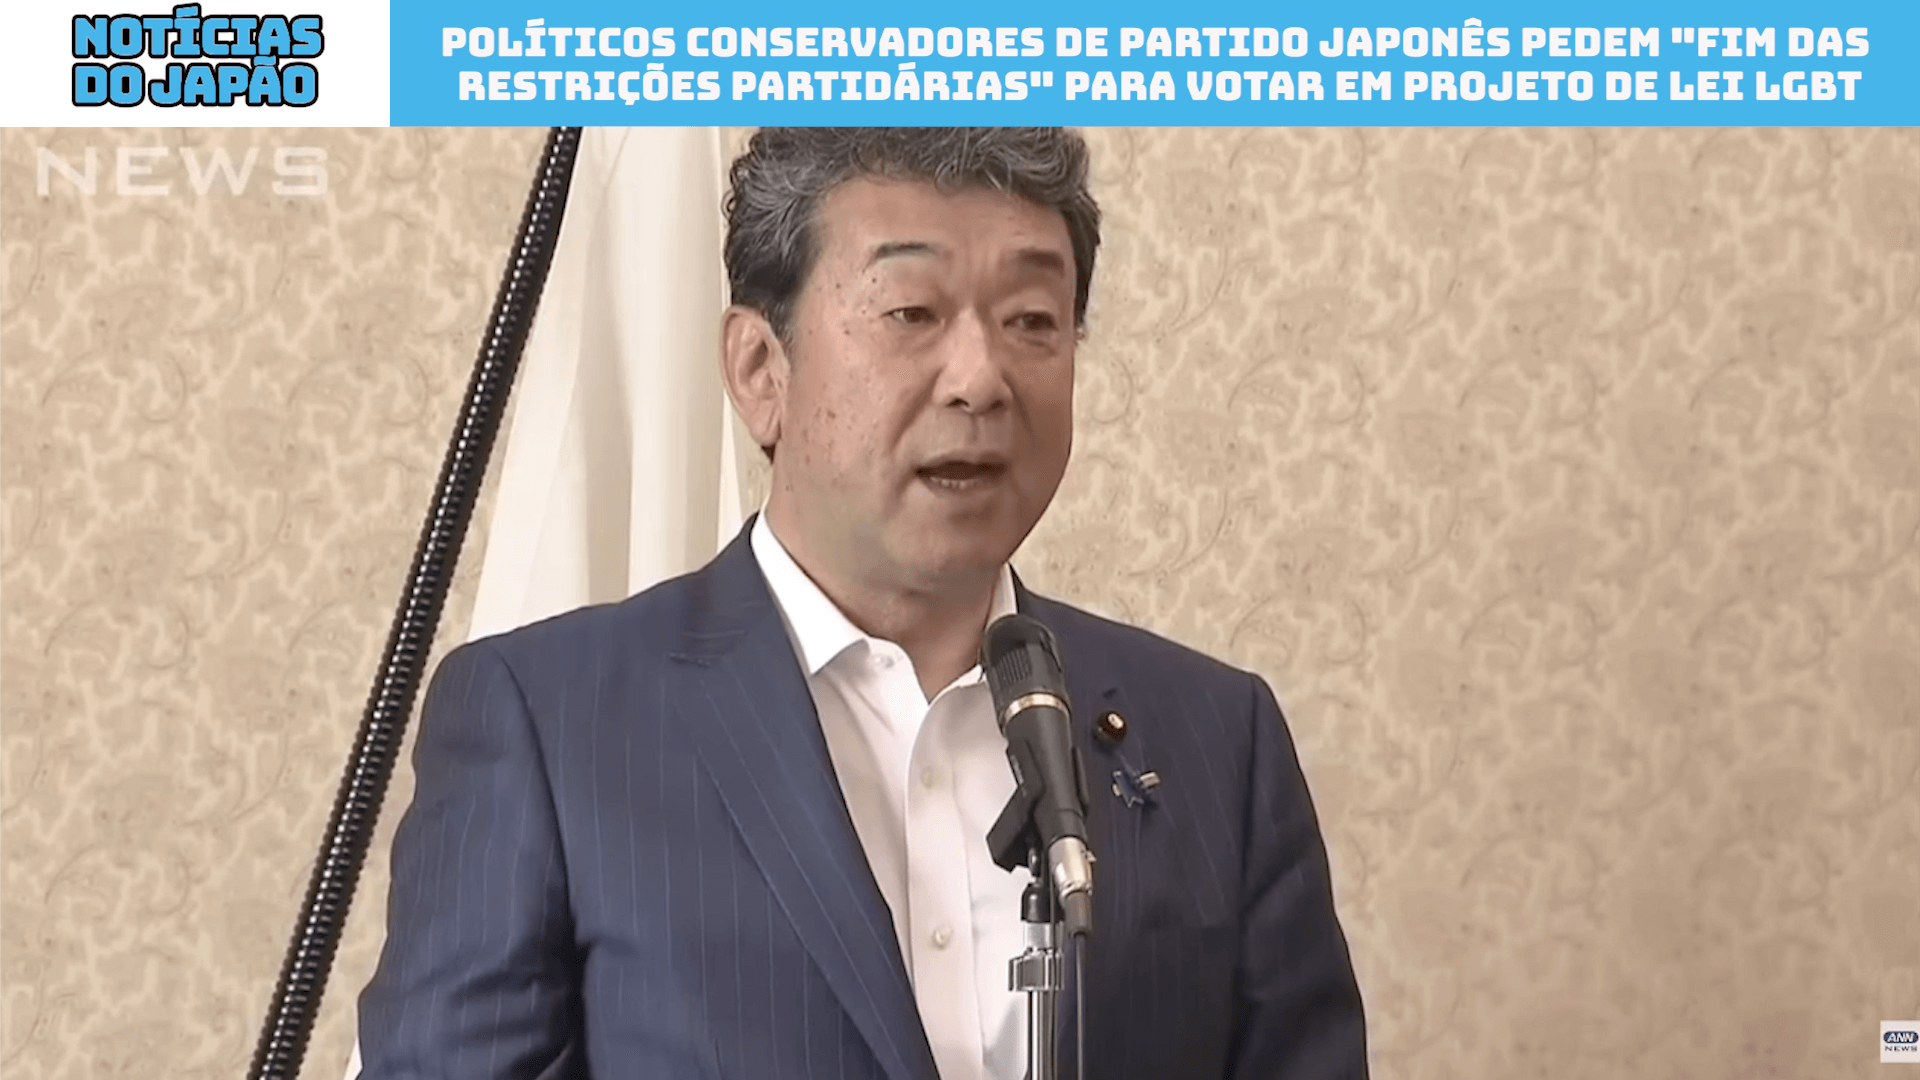 Políticos conservadores de Partido japonês pedem “fim das restrições partidárias” para votar em projeto de lei LGBT